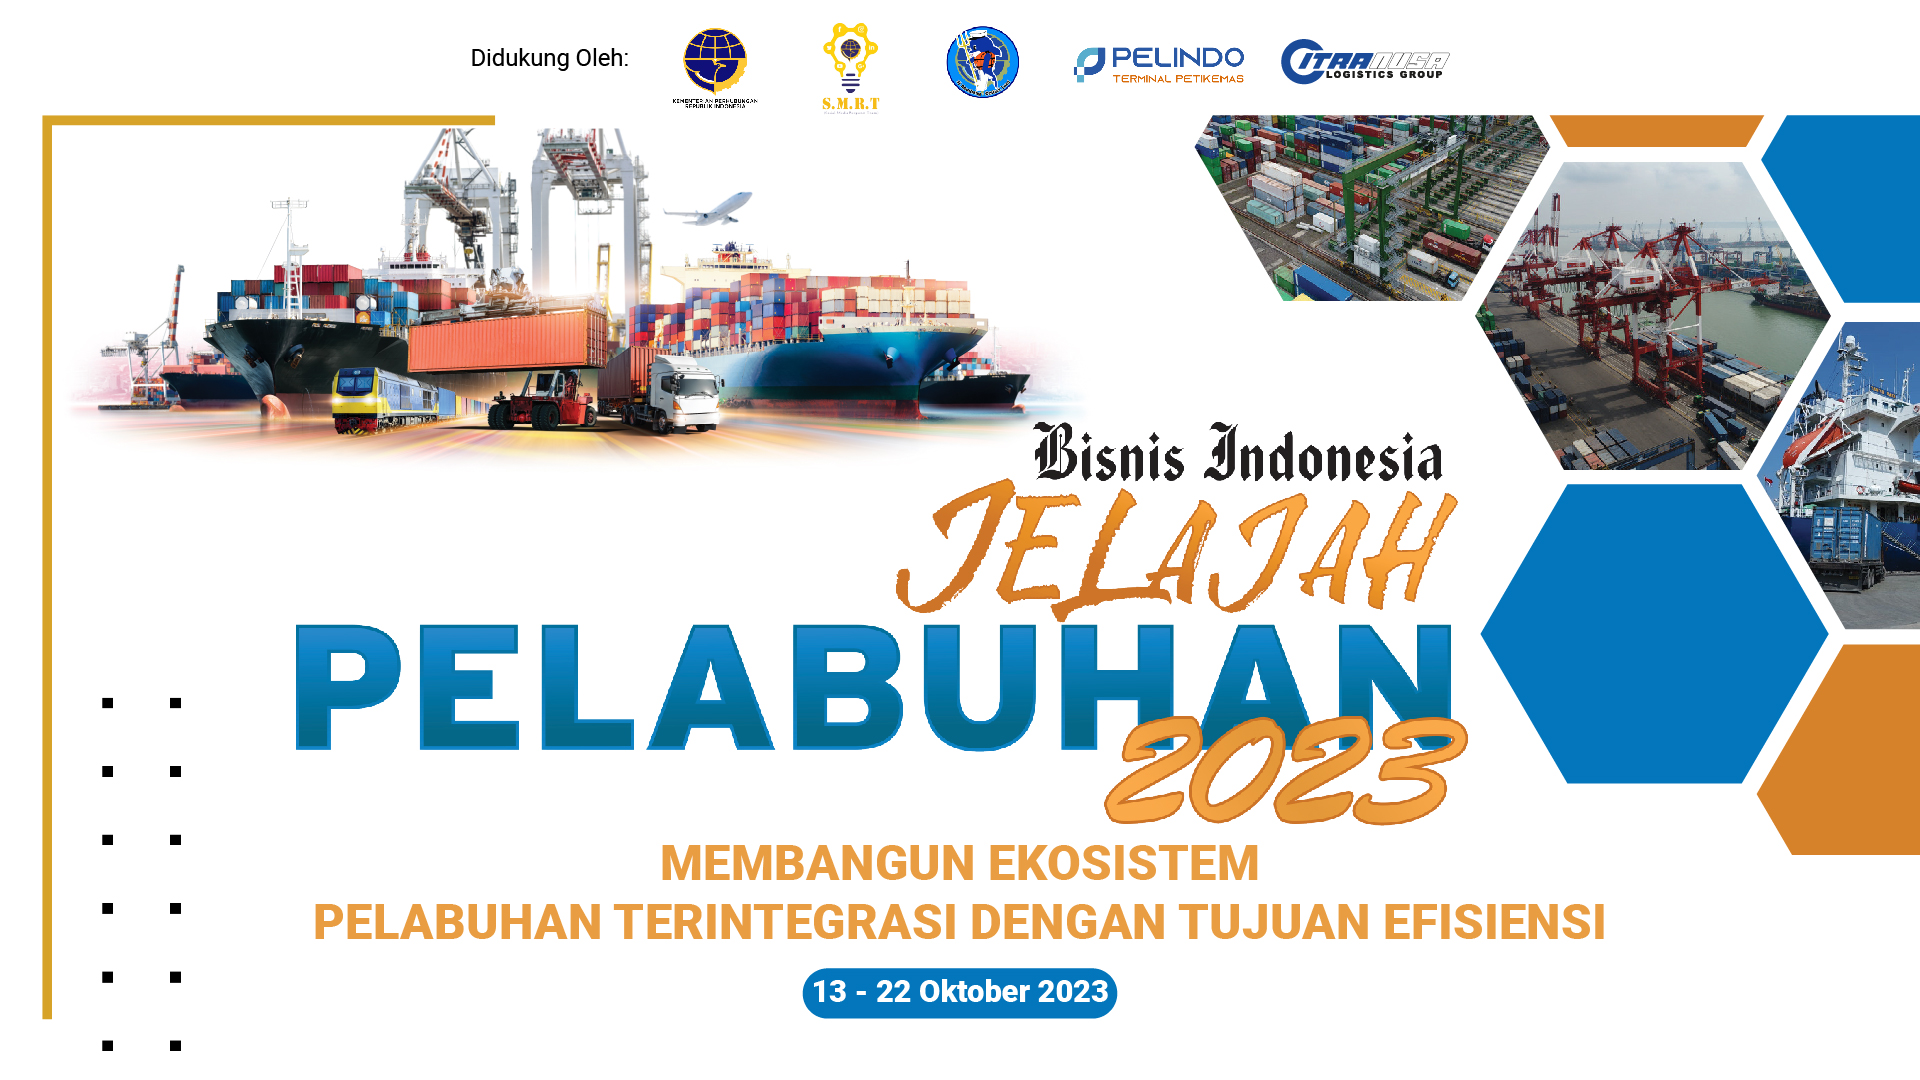 Pelepasan Tim Jelajah Pelabuhan 2023 Bisnis Indonesia